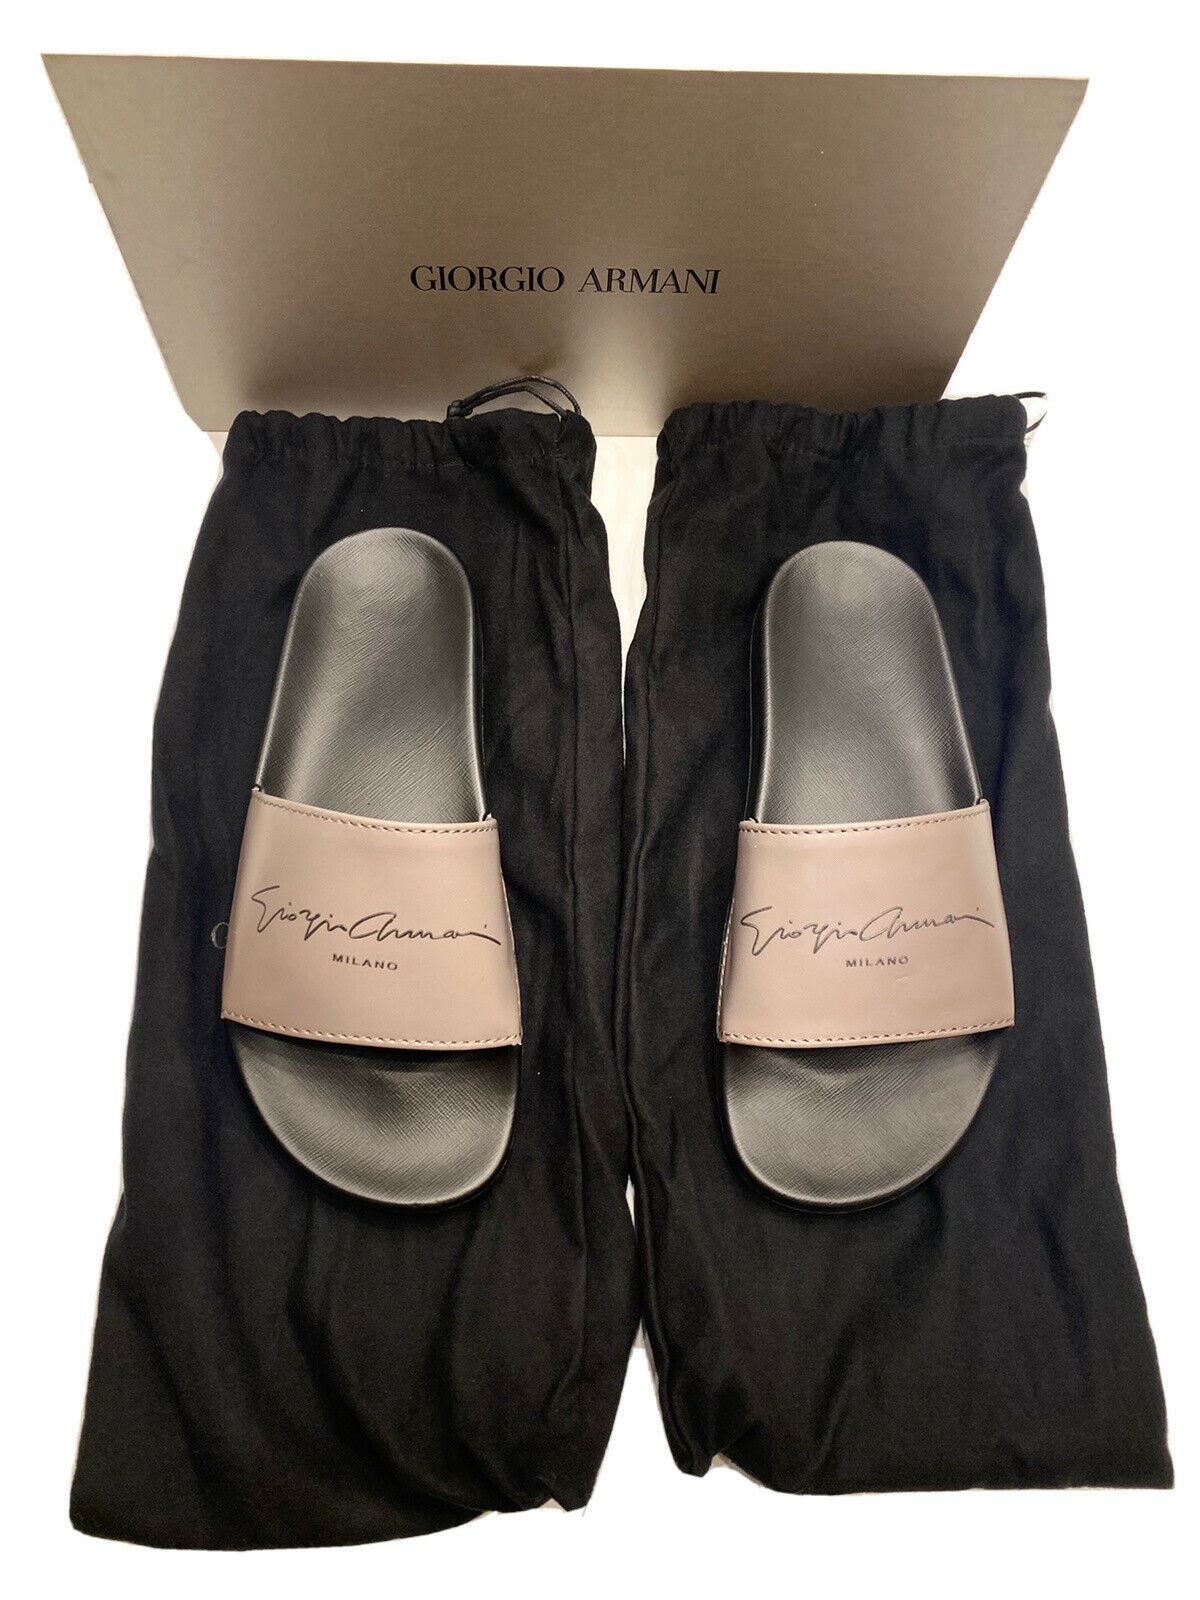 NIB 295 $ Giorgio Armani Herren-Sandalen aus Gummi in Grau/Schwarz 11,5 US (46 Eu) X2P069 